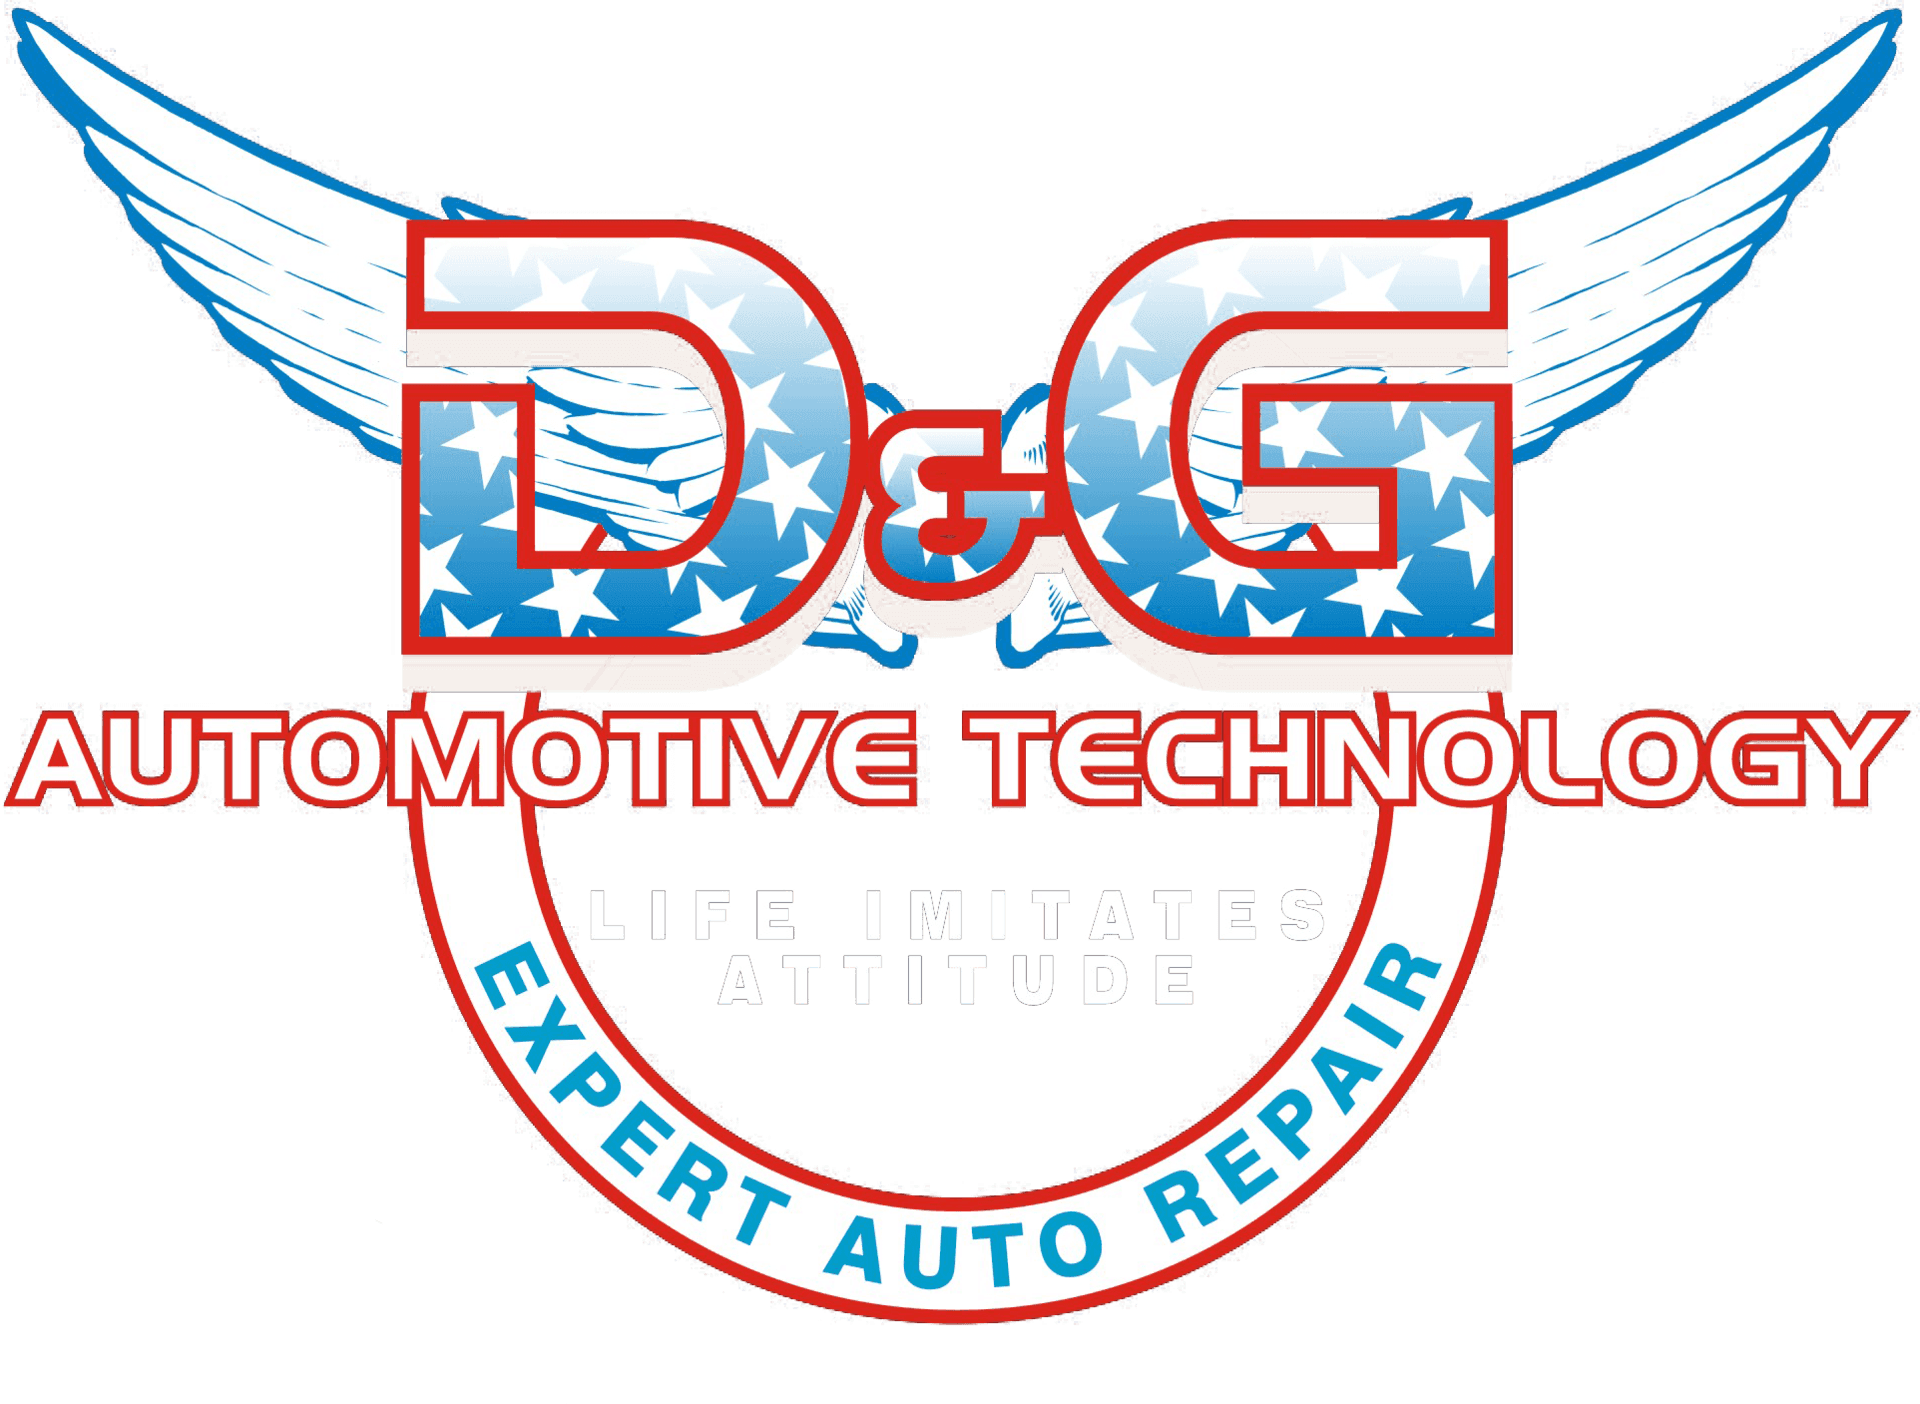 Dand G Logo - Contact D & G Automotive Technology Hempstead 516-292-9276